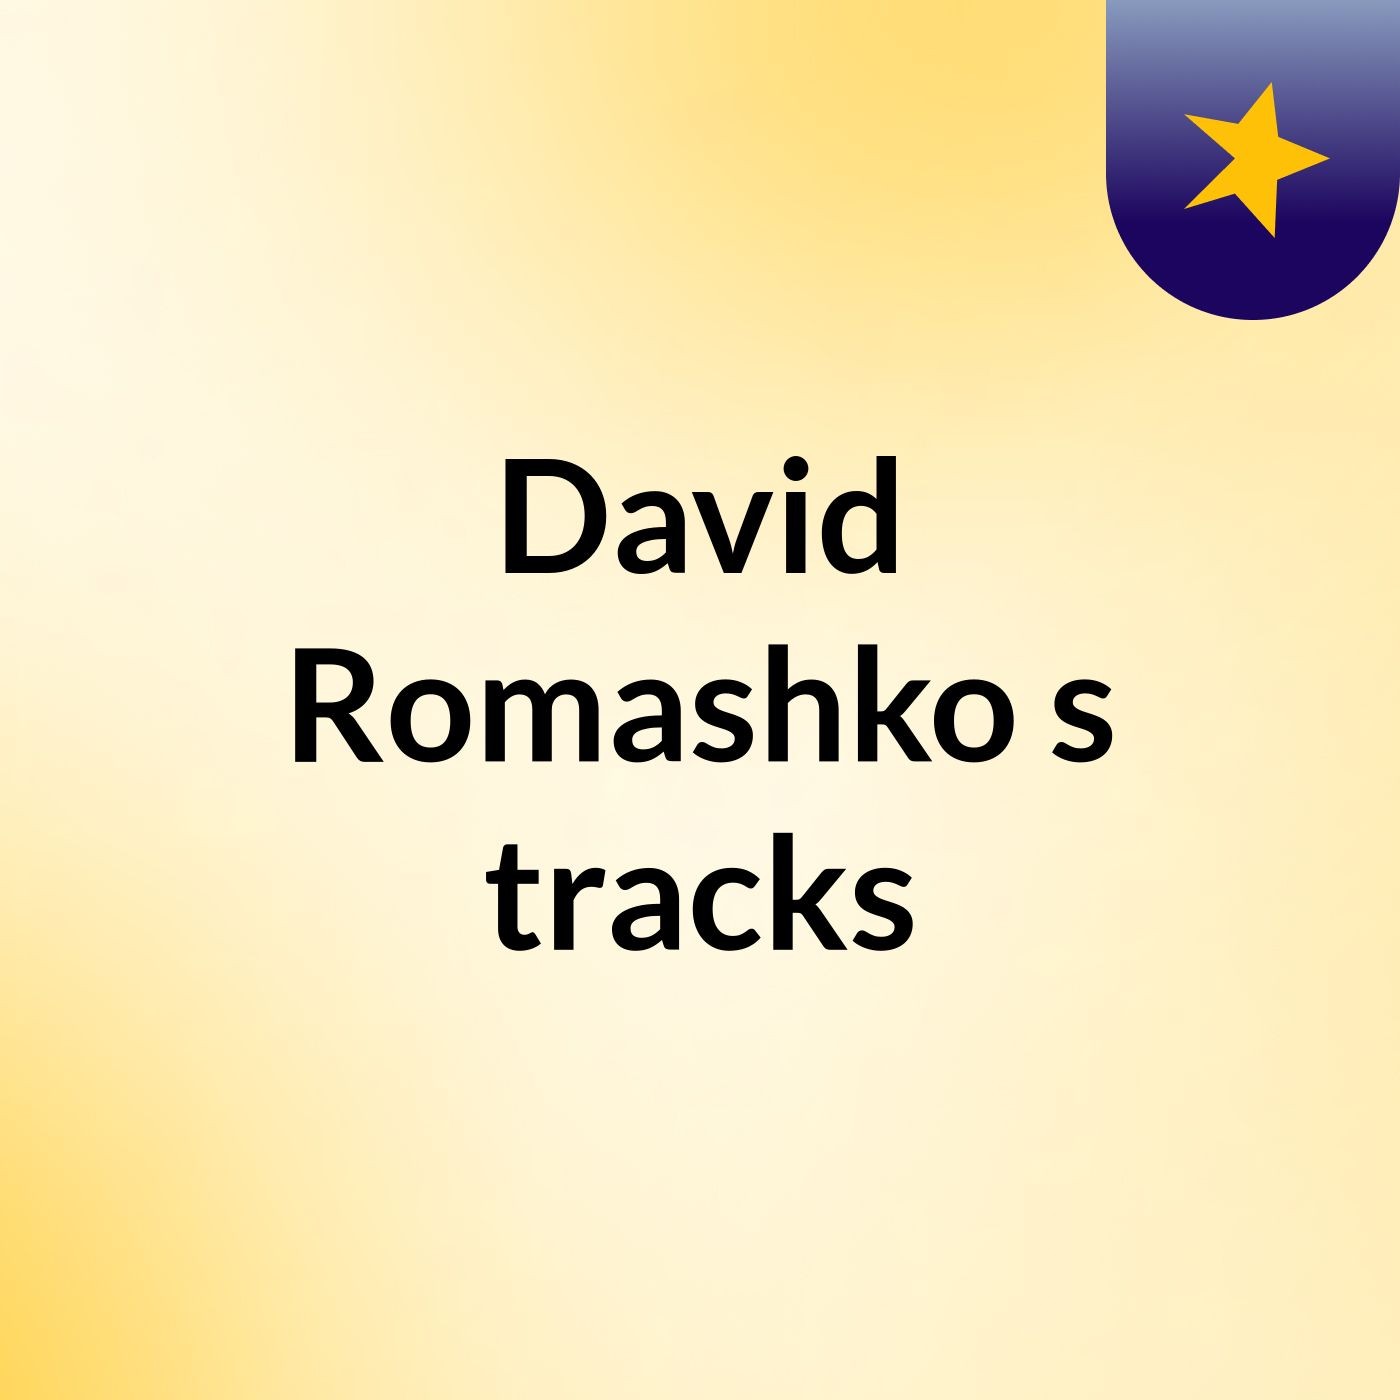 David Romashko's tracks